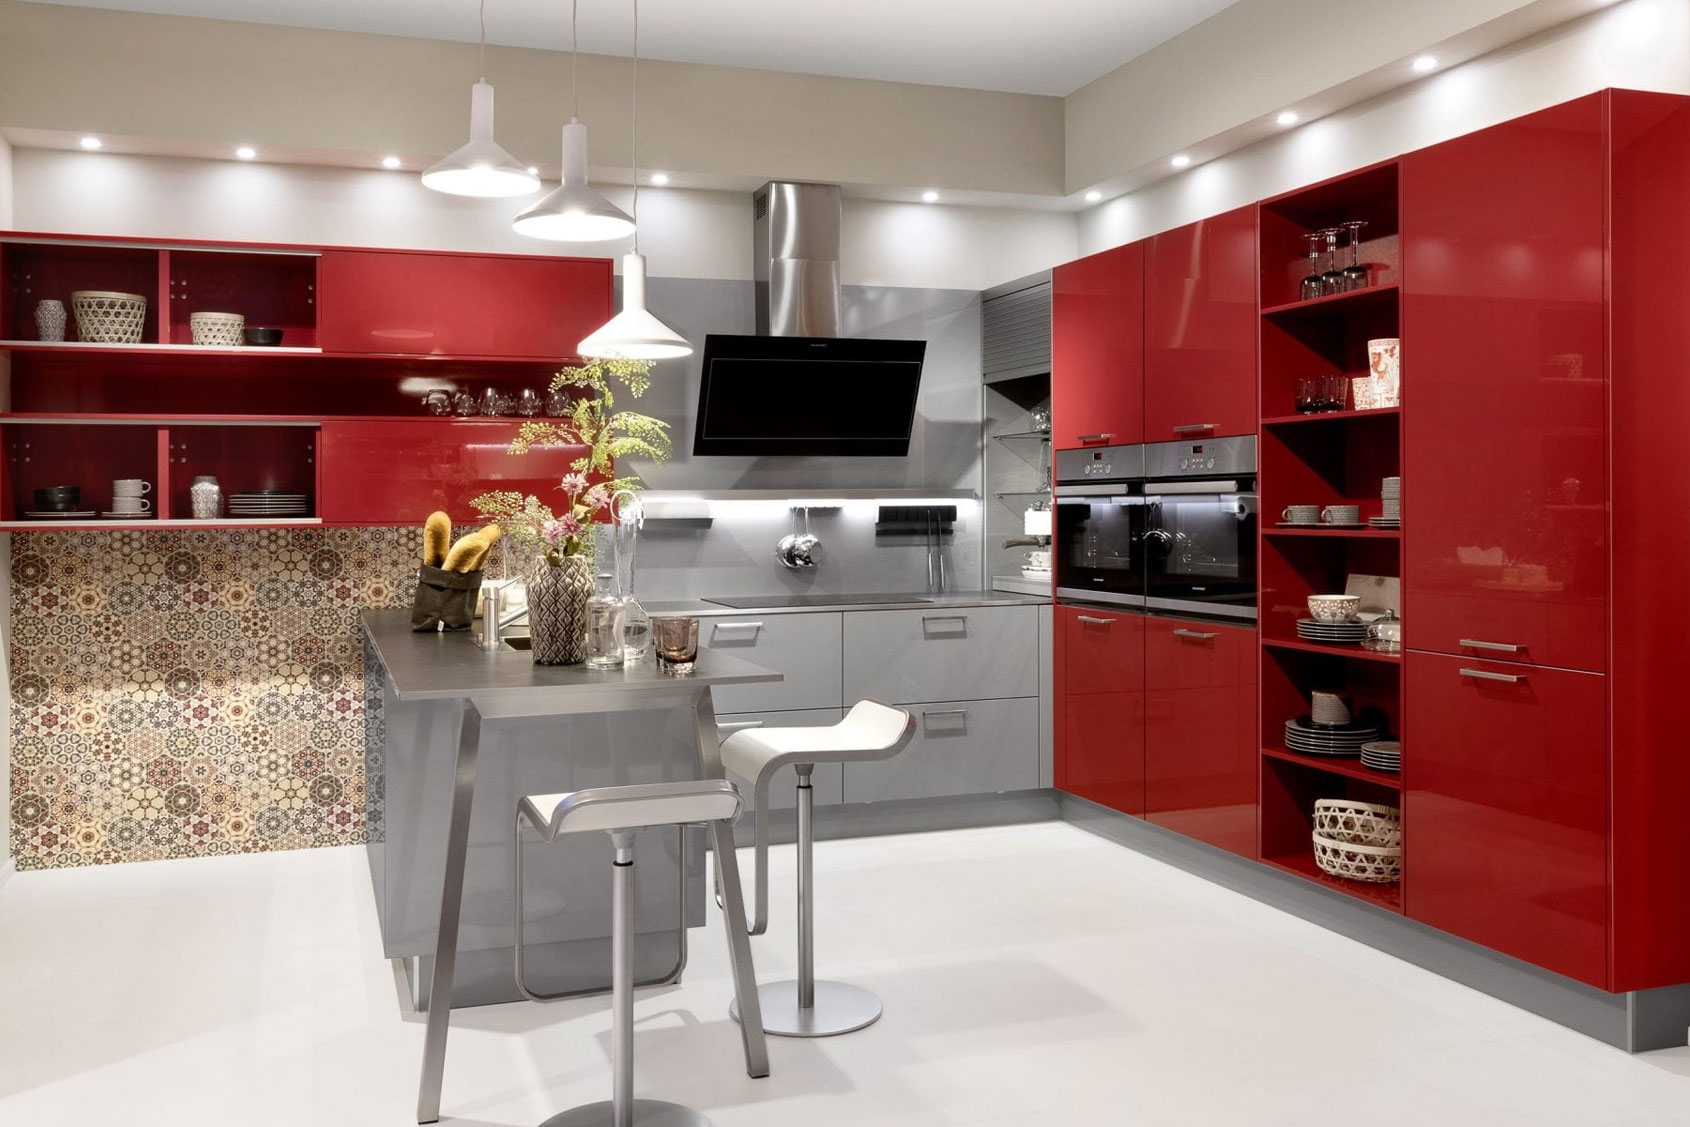 ByDesign – Kitchens, Bedrooms & Bespoke Furniture